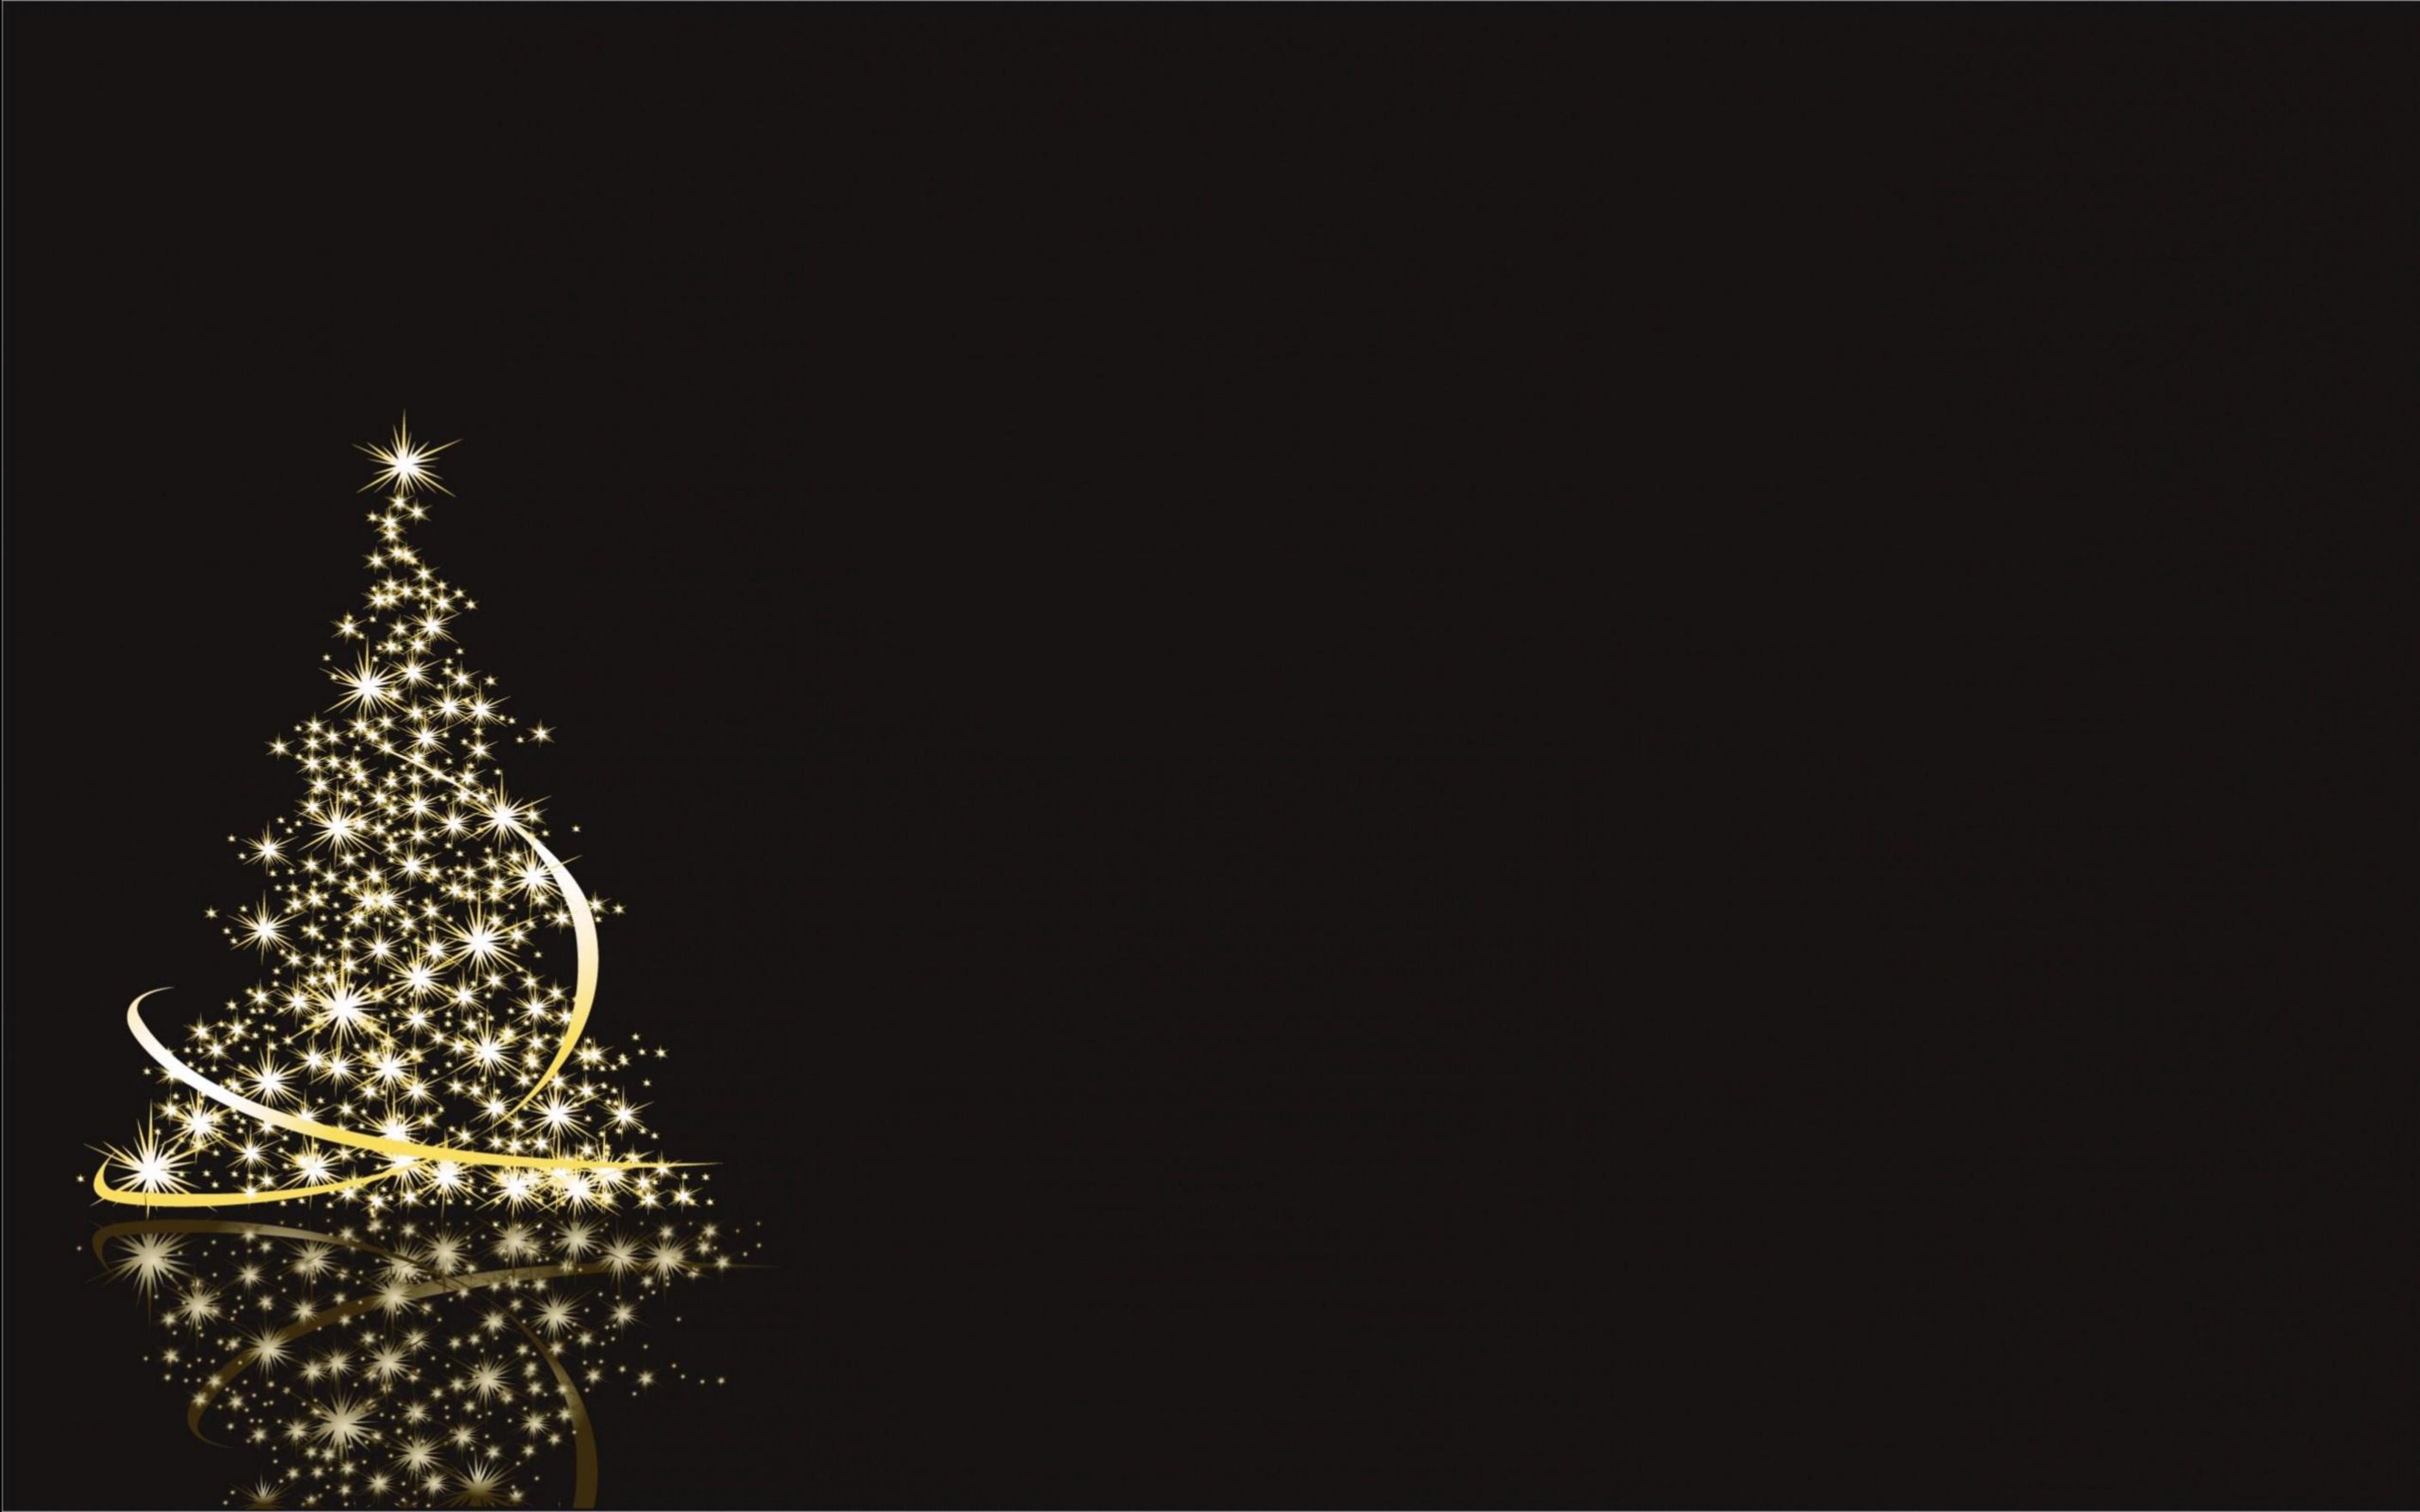 papel de navidad,árbol de navidad,decoración navideña,negro,árbol,luces de navidad